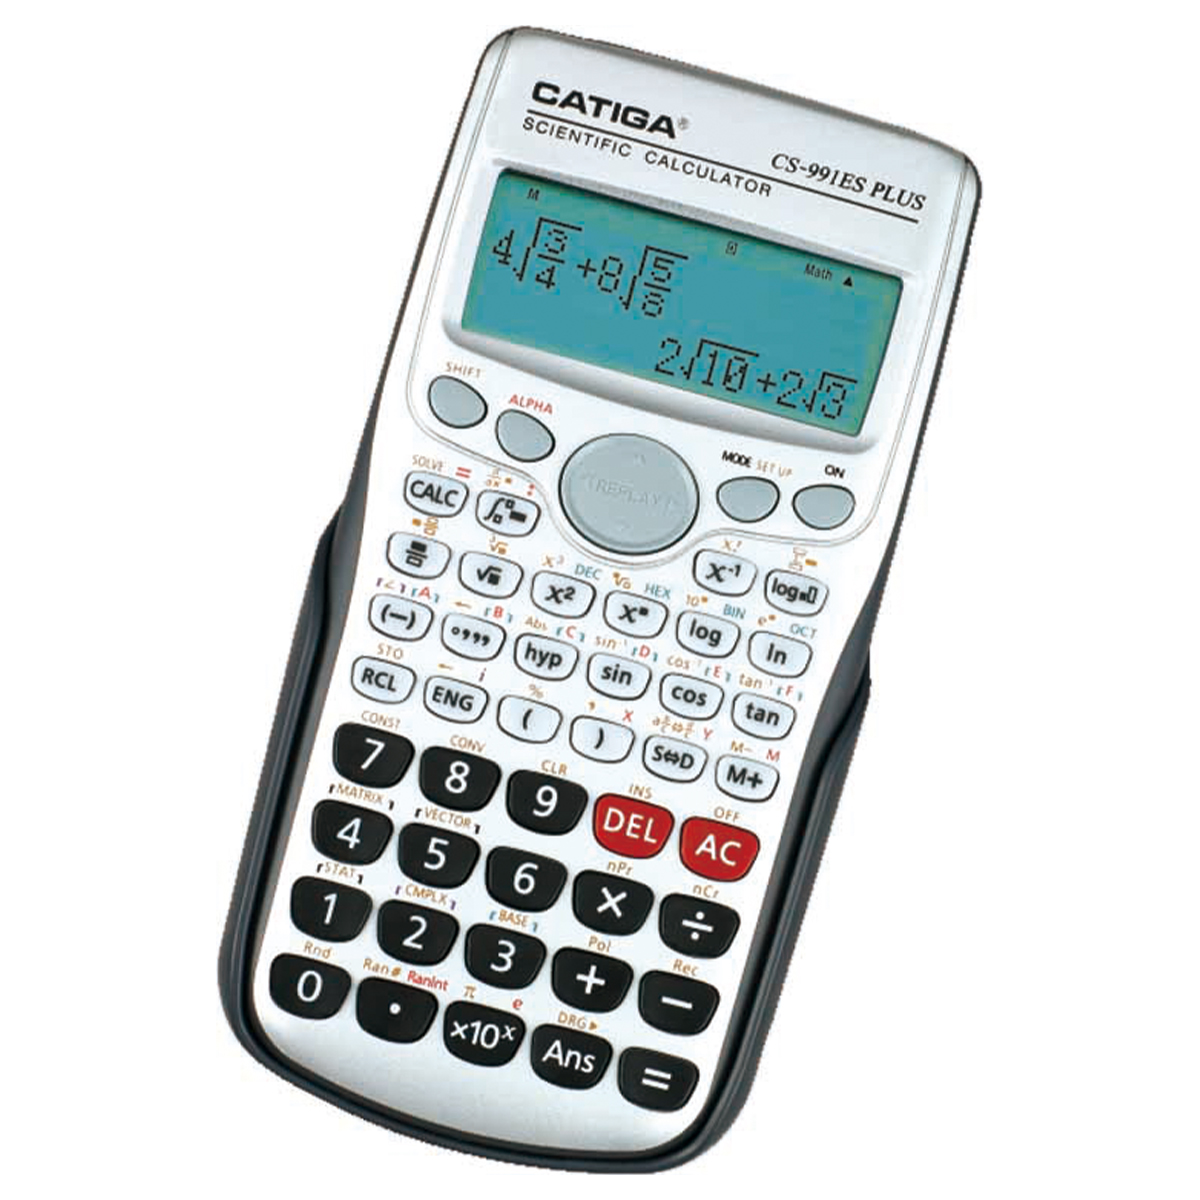 ماشین حساب کاتیگا مدل CS-991ES PLUS کد F2021